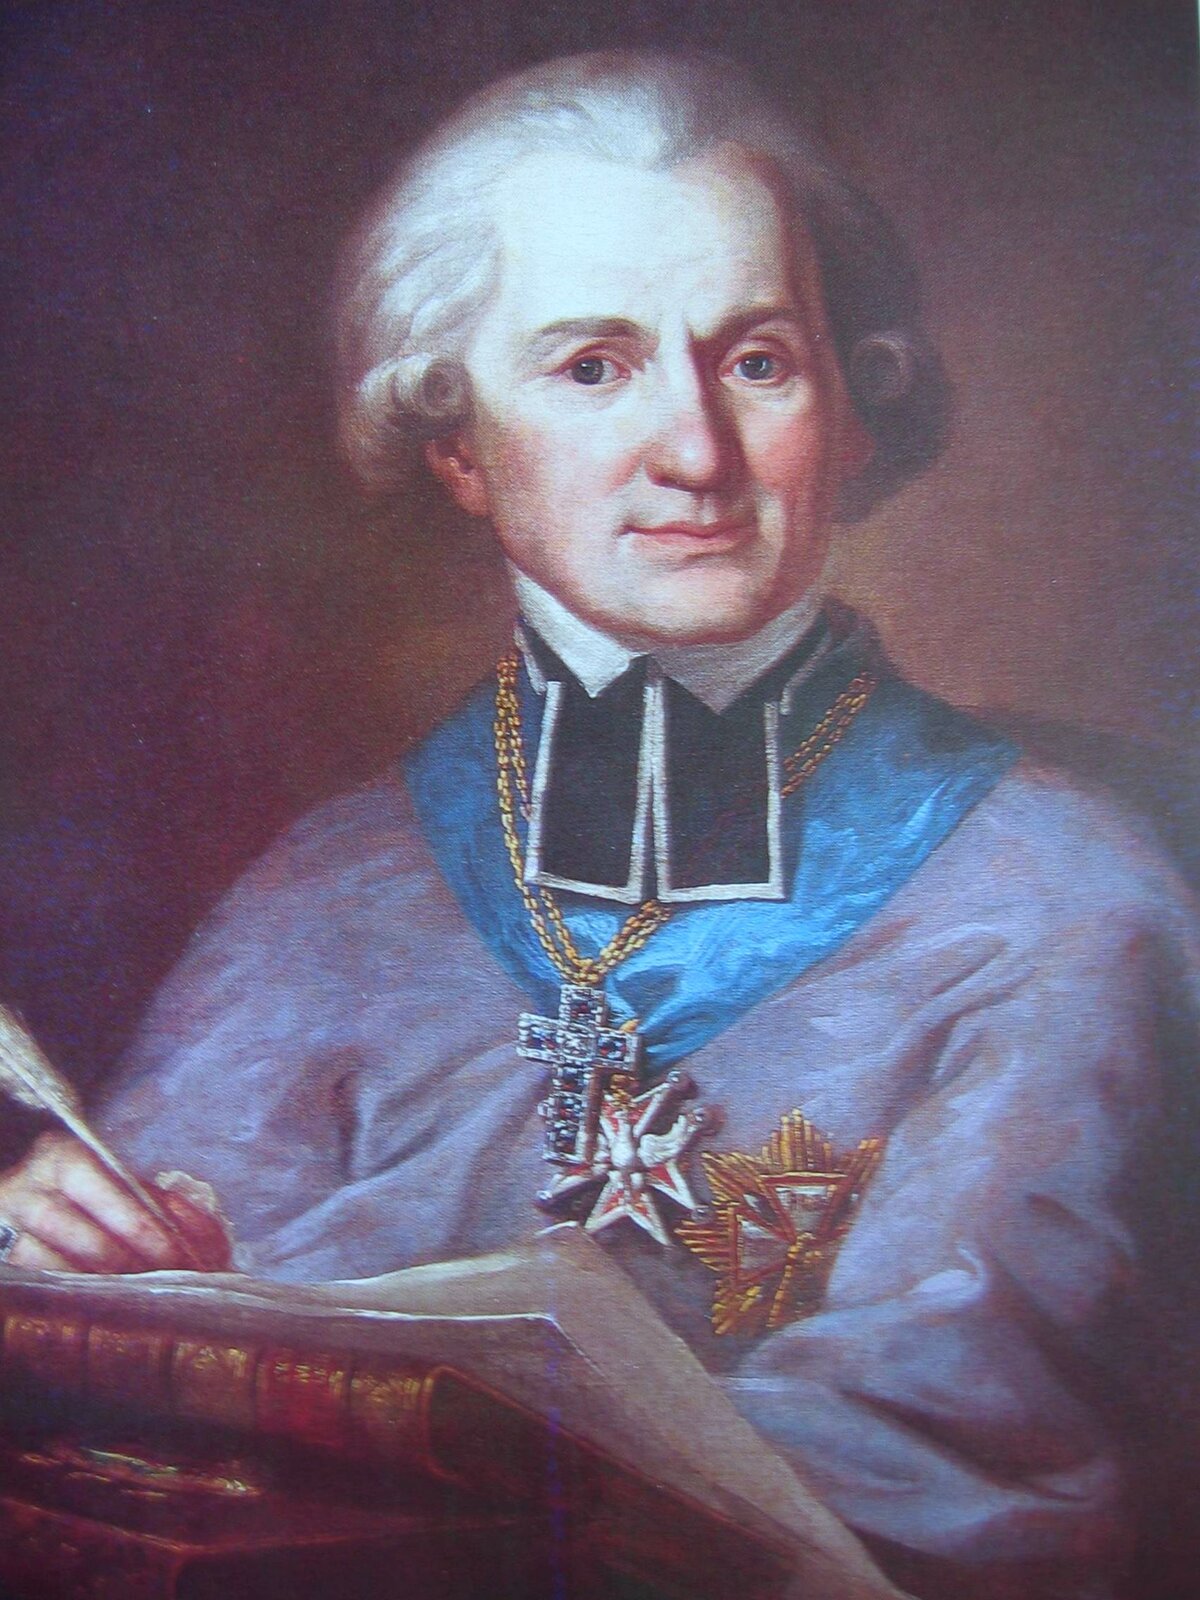 Adam Naruszewicz Źródło: Mateusz Tokarski, Adam Naruszewicz, ok. 1791, olej na płótnie, Zamek Królewski w Warszawie, domena publiczna.